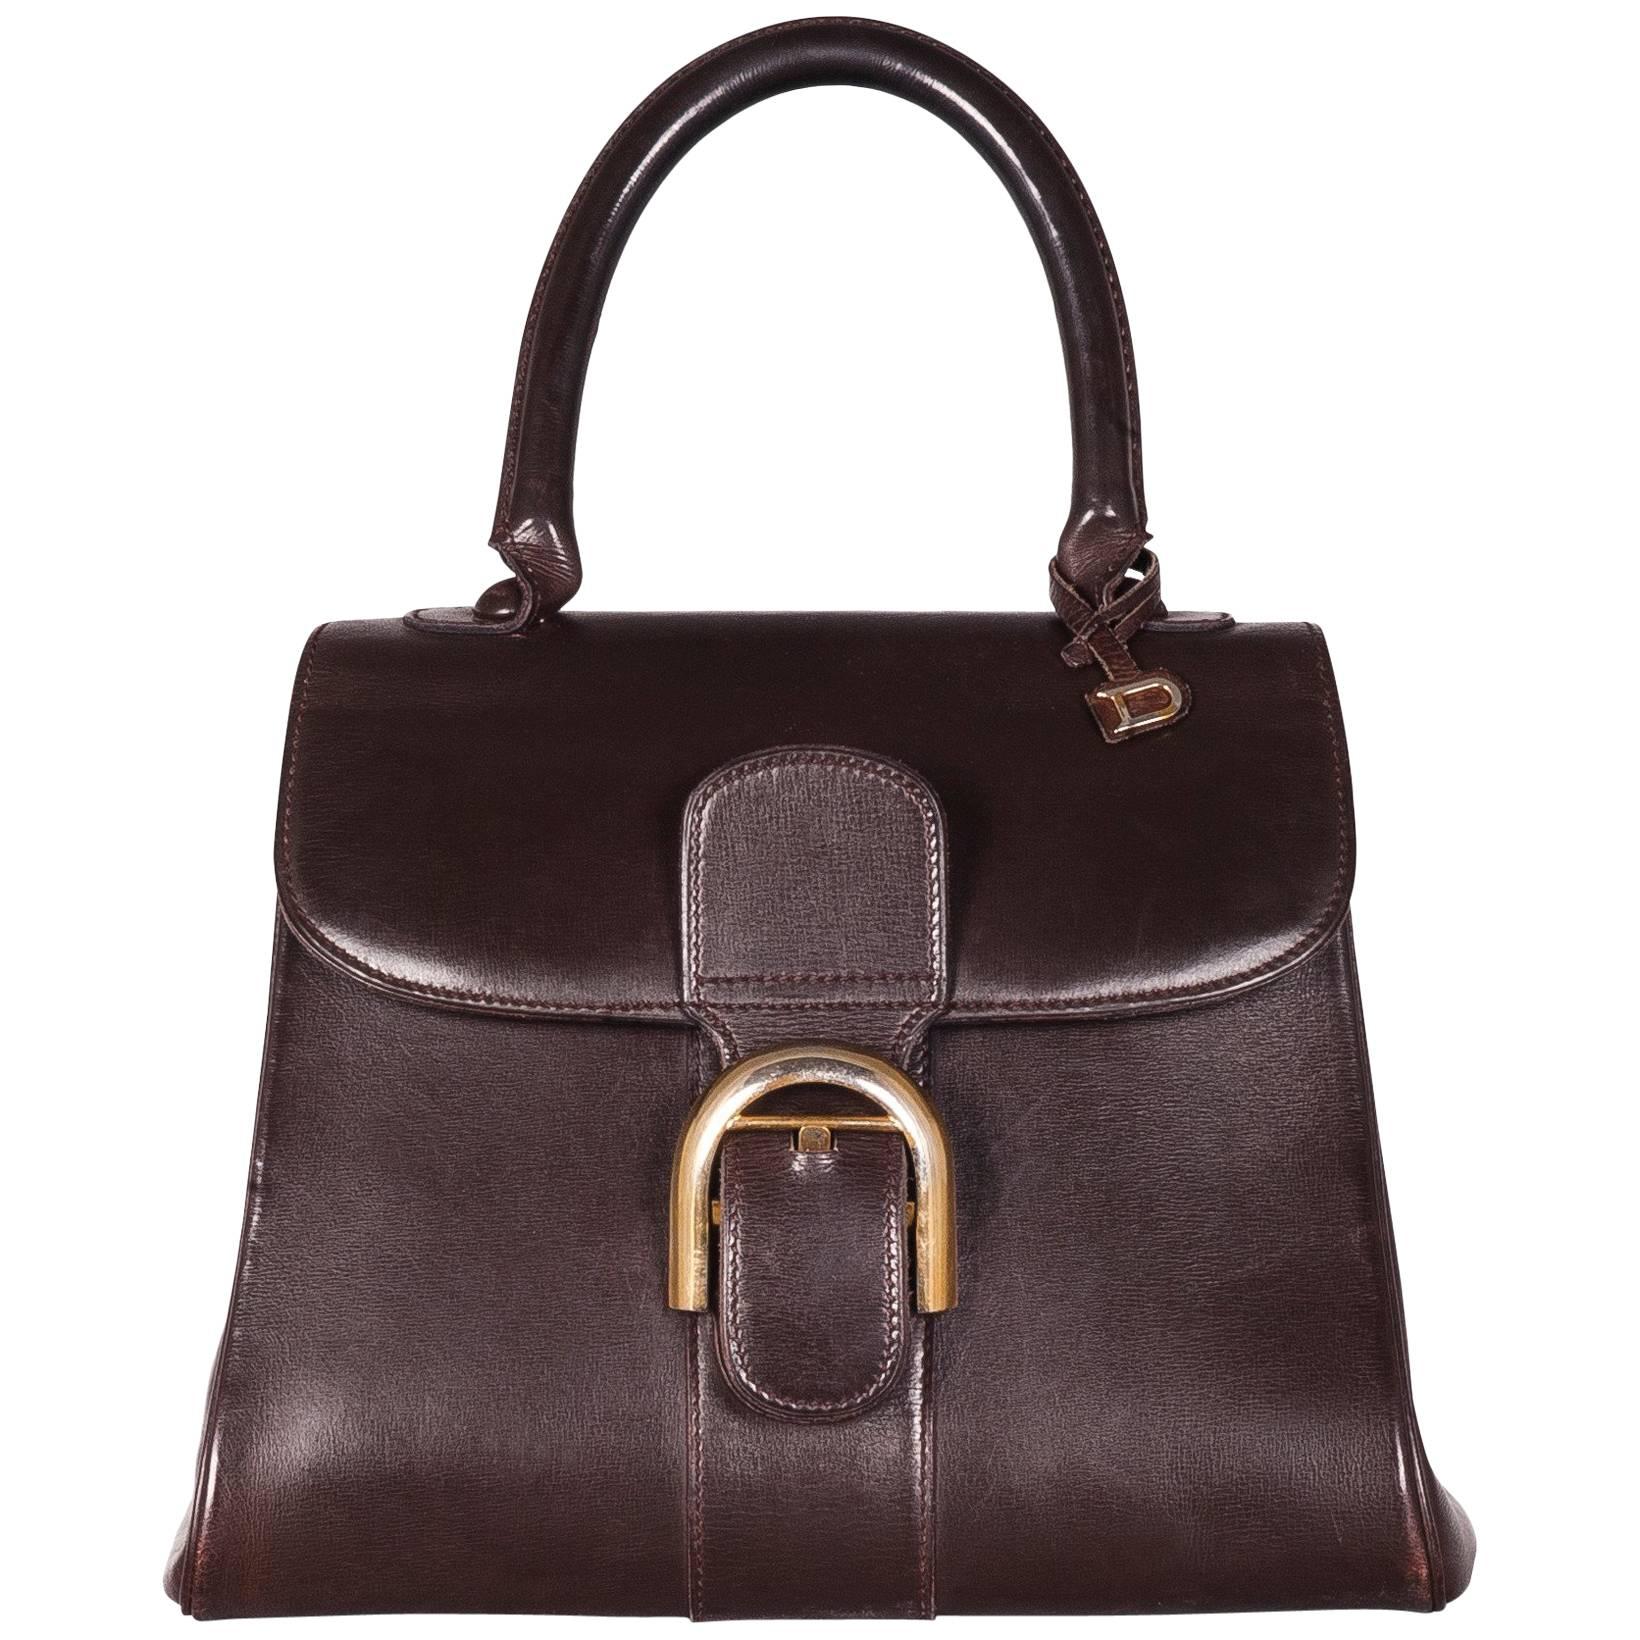 Delvaux No. 24 "Brilliant" Handbag in Box Calf Leather, 1958 For Sale